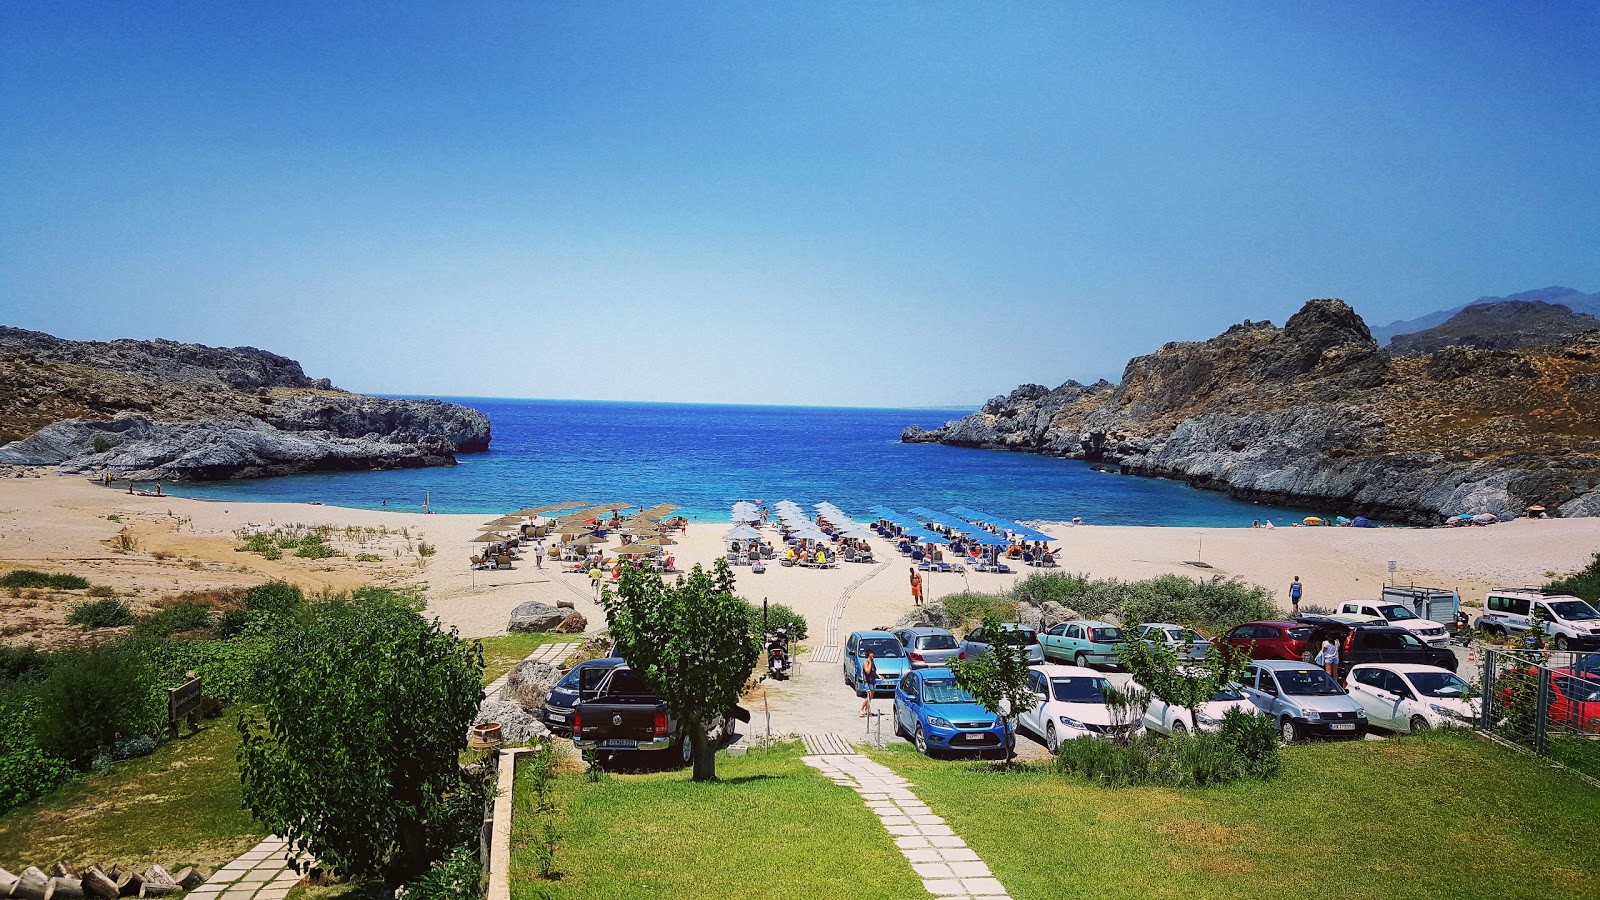 Photo of Skinaria beach beach resort area